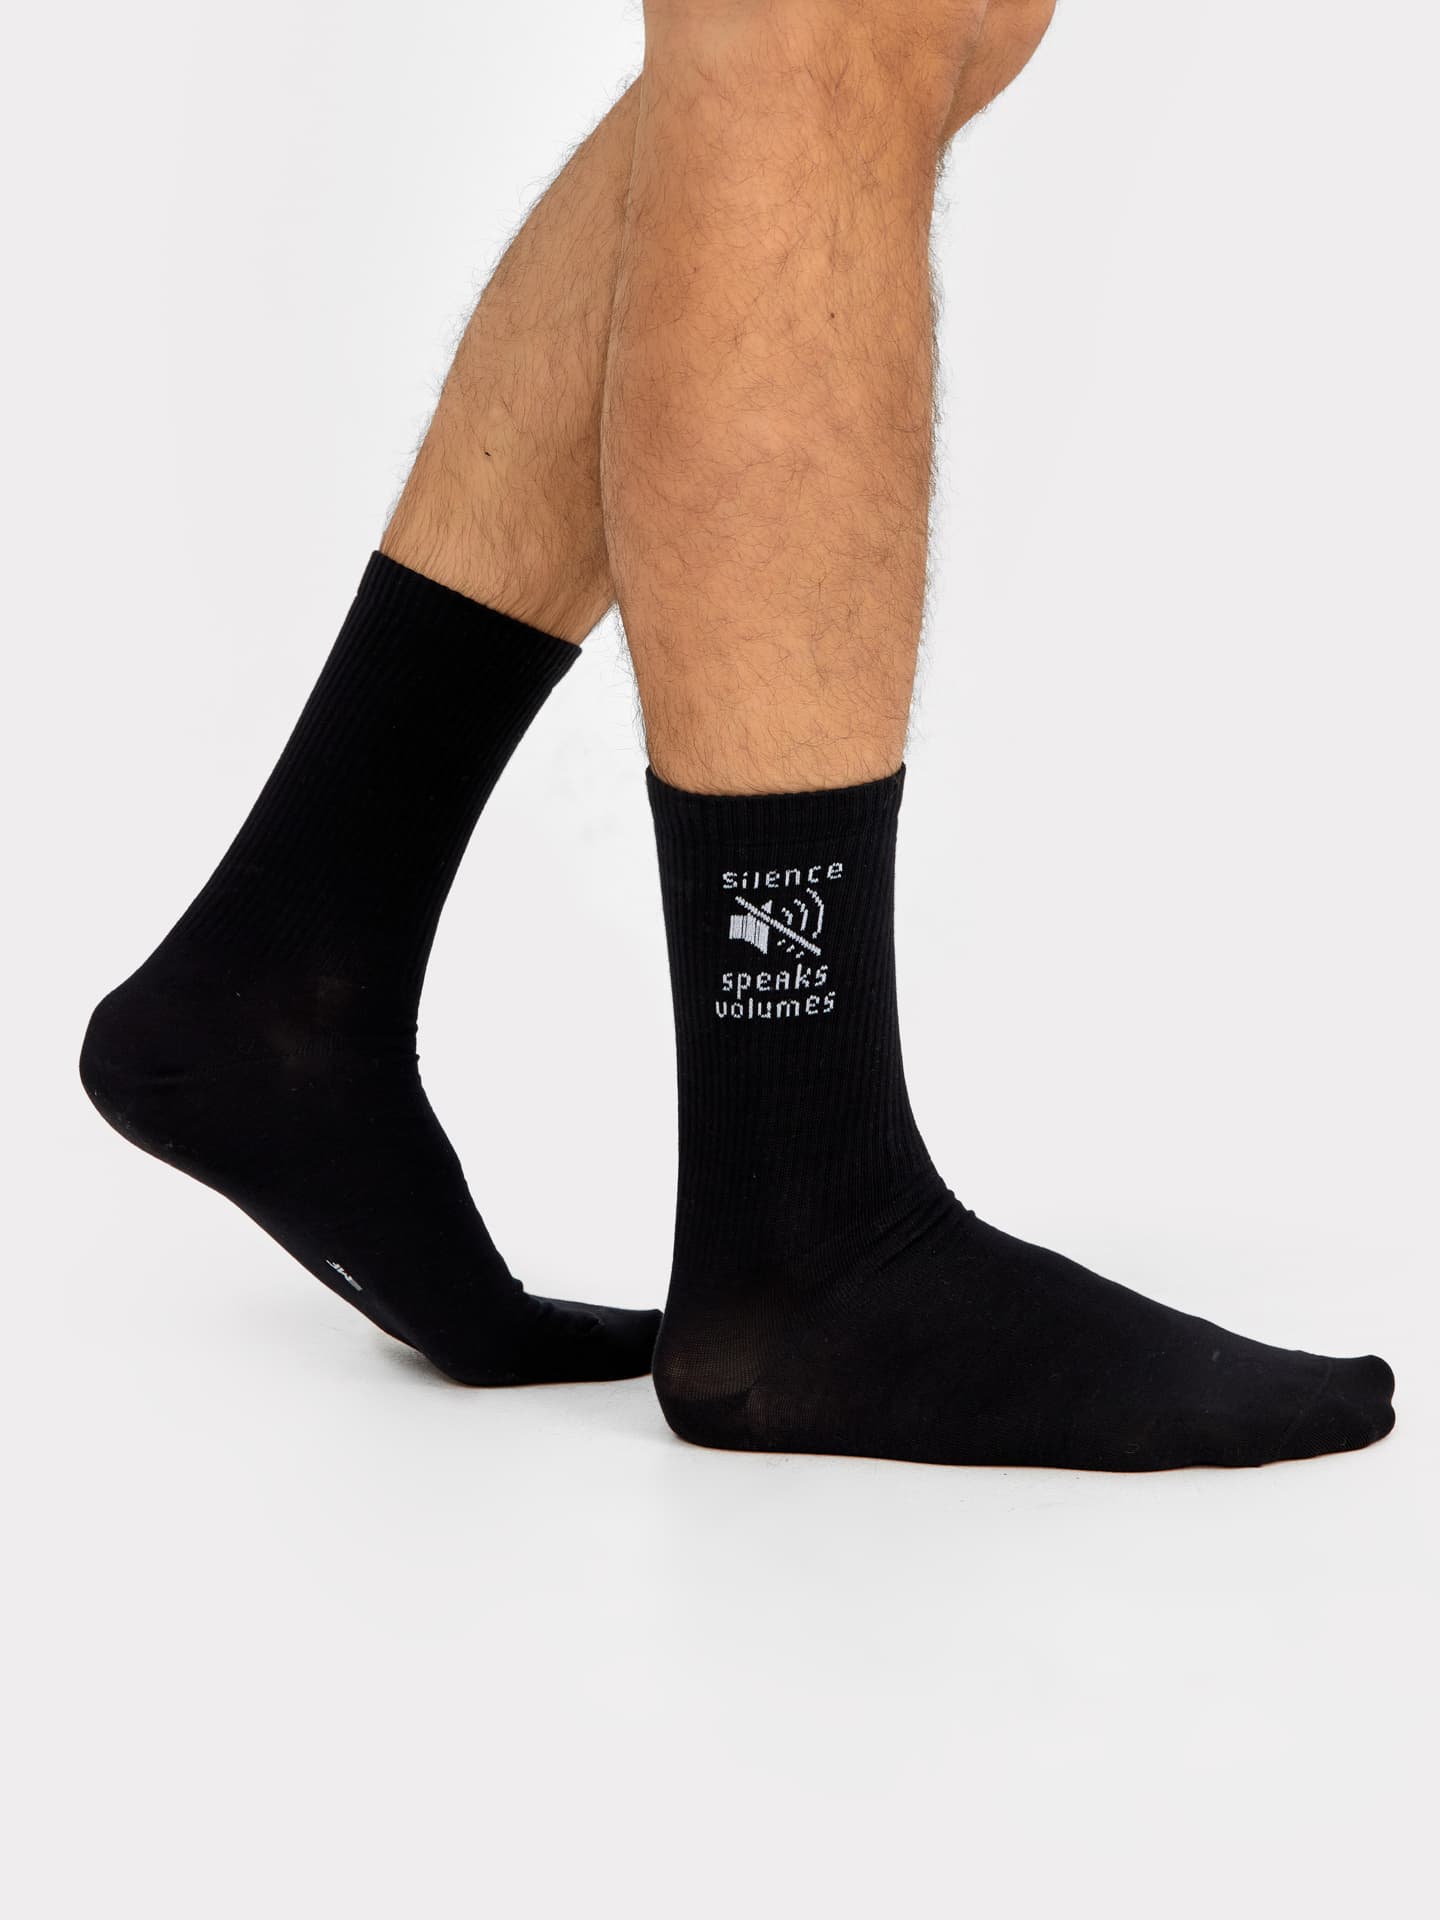 Высокие мужские носки черного цвета с надписью